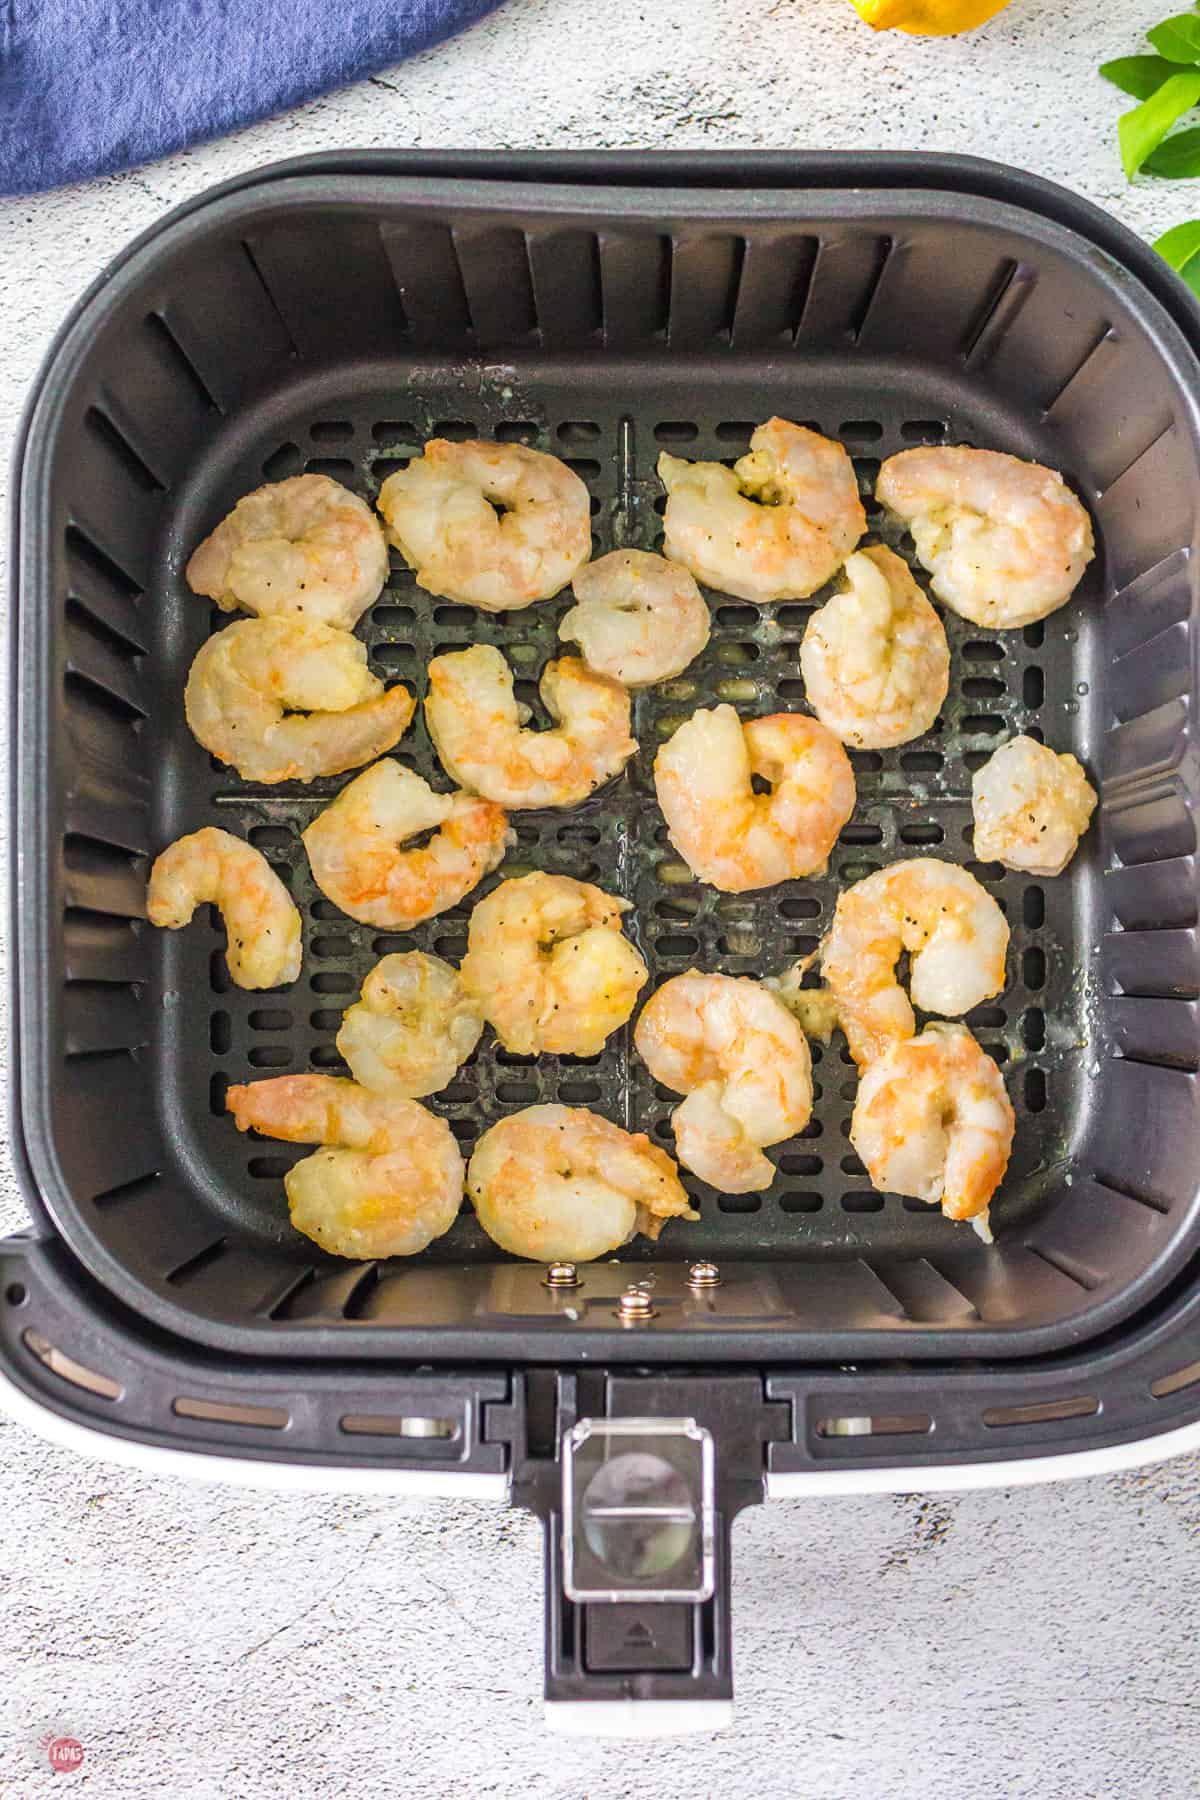 shrimp in air fryer basket